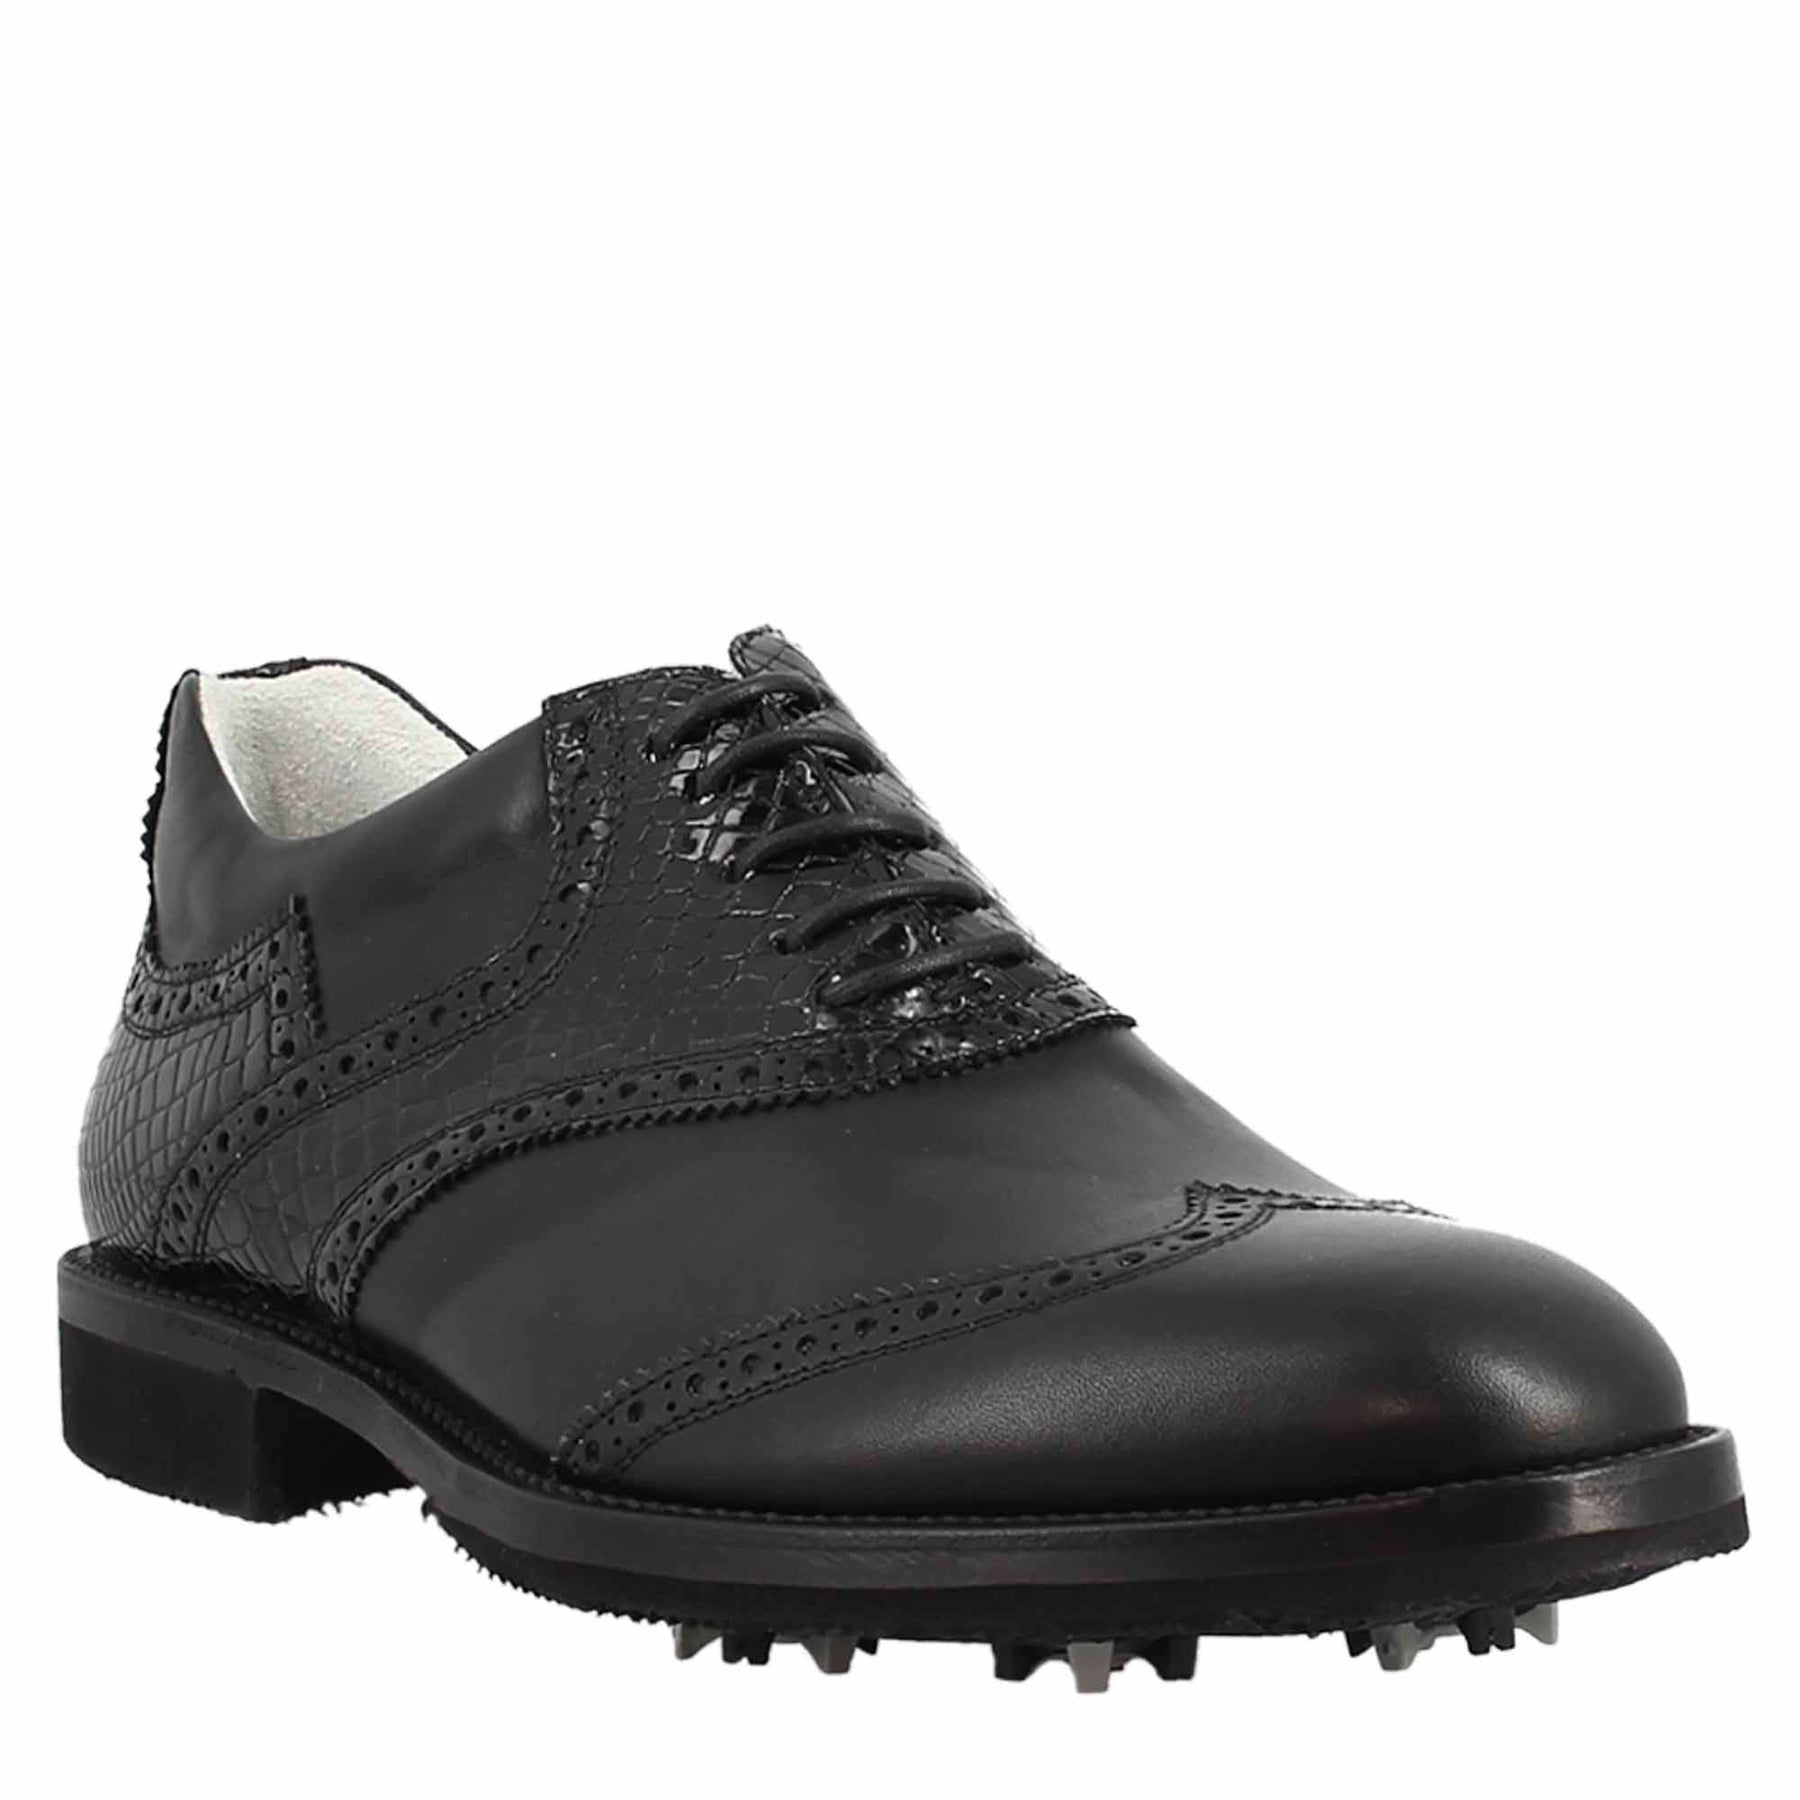 Chaussures de golf pour homme en cuir de coco noir, avec des détails de brogue faits à la main